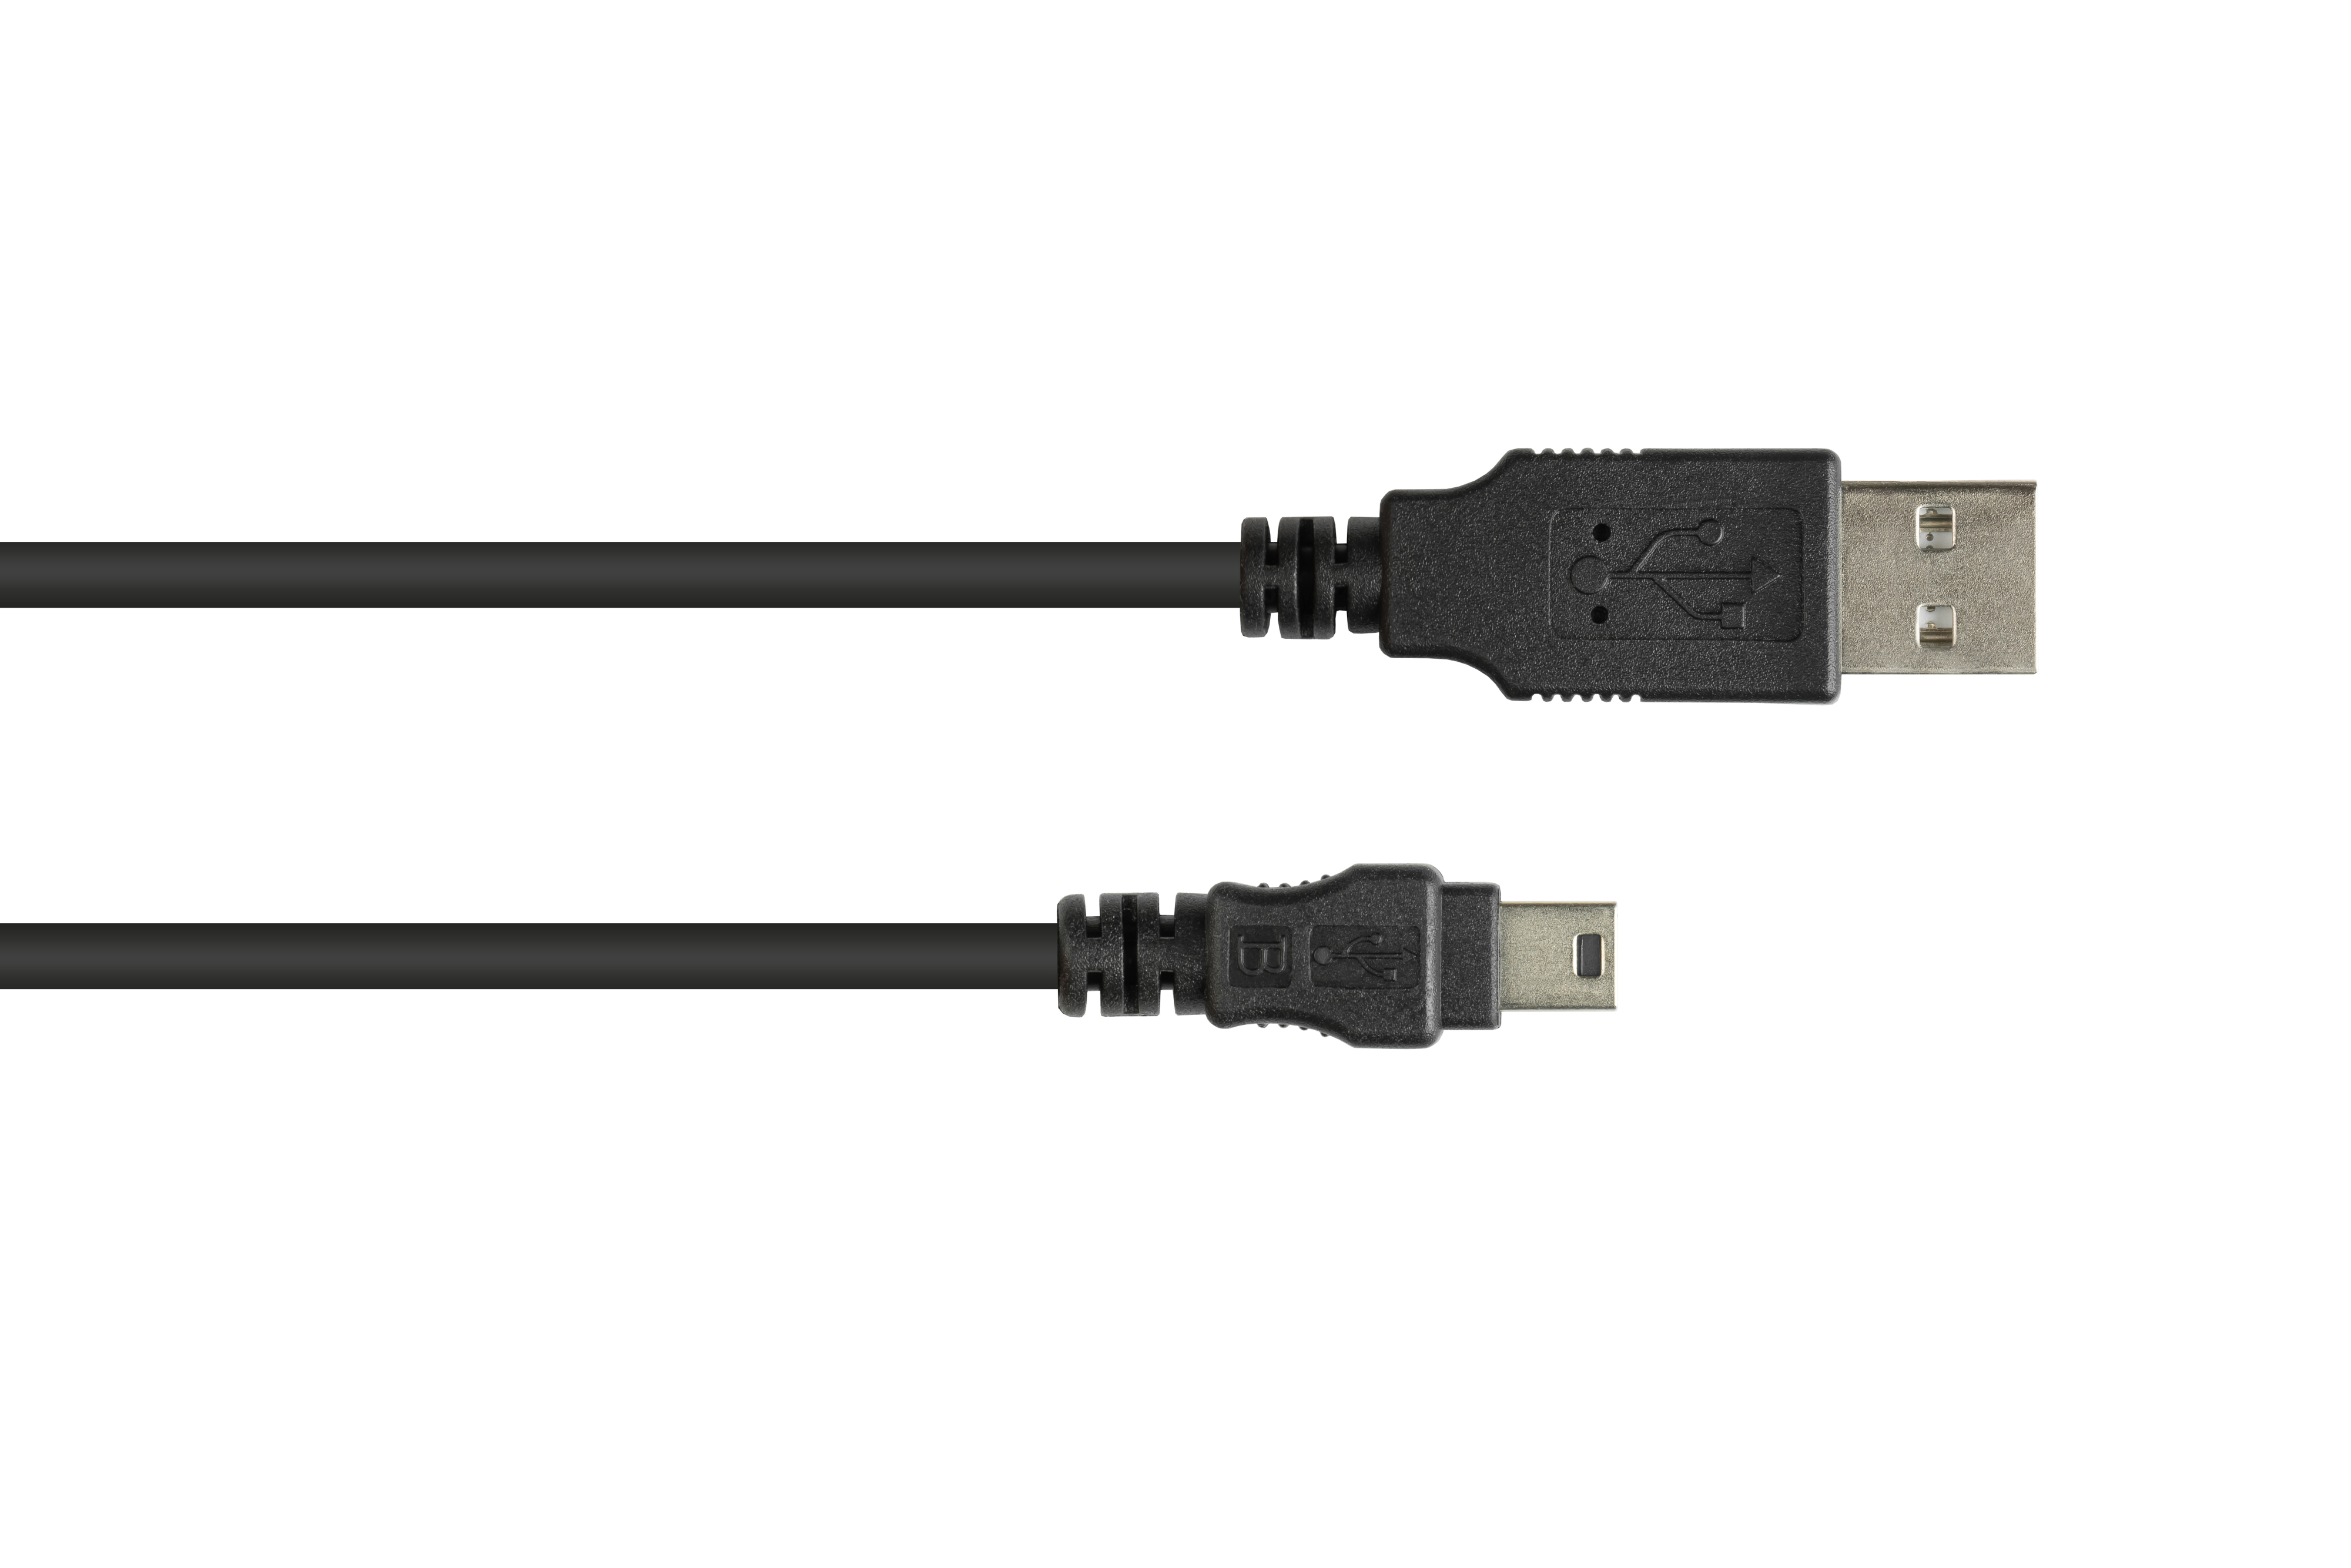 CONNECTIONS 2.0 Stecker Mini Anschlusskabel USB an A B GOOD schwarz Stecker 5-pin,